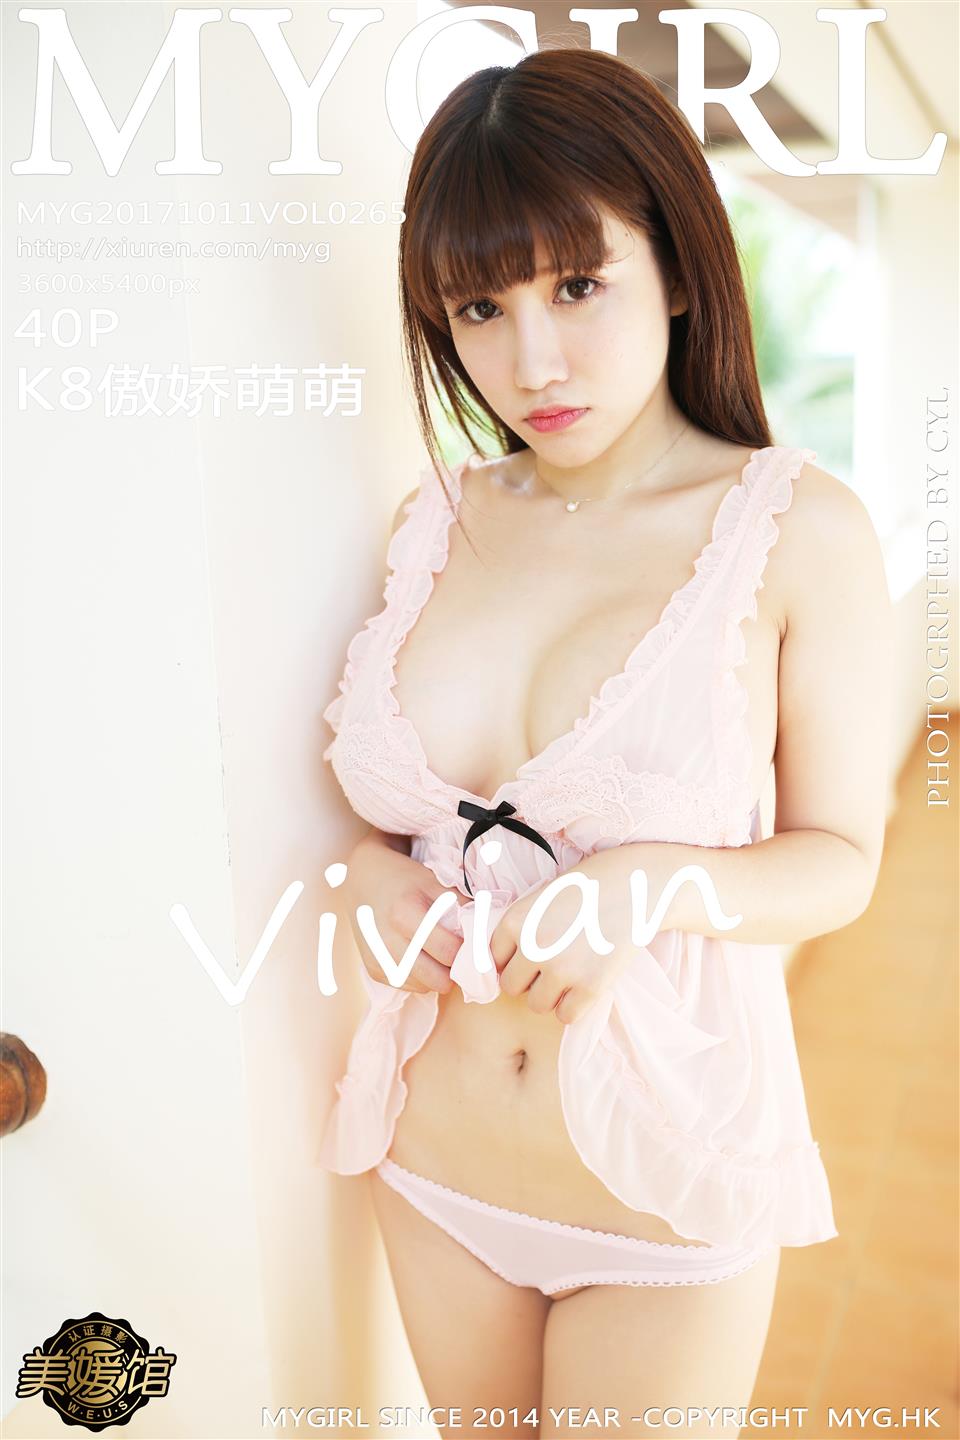 MyGirl 美媛馆新特刊 2017-10-11 Vol.265 K8傲娇萌萌Vivian - 32.jpg